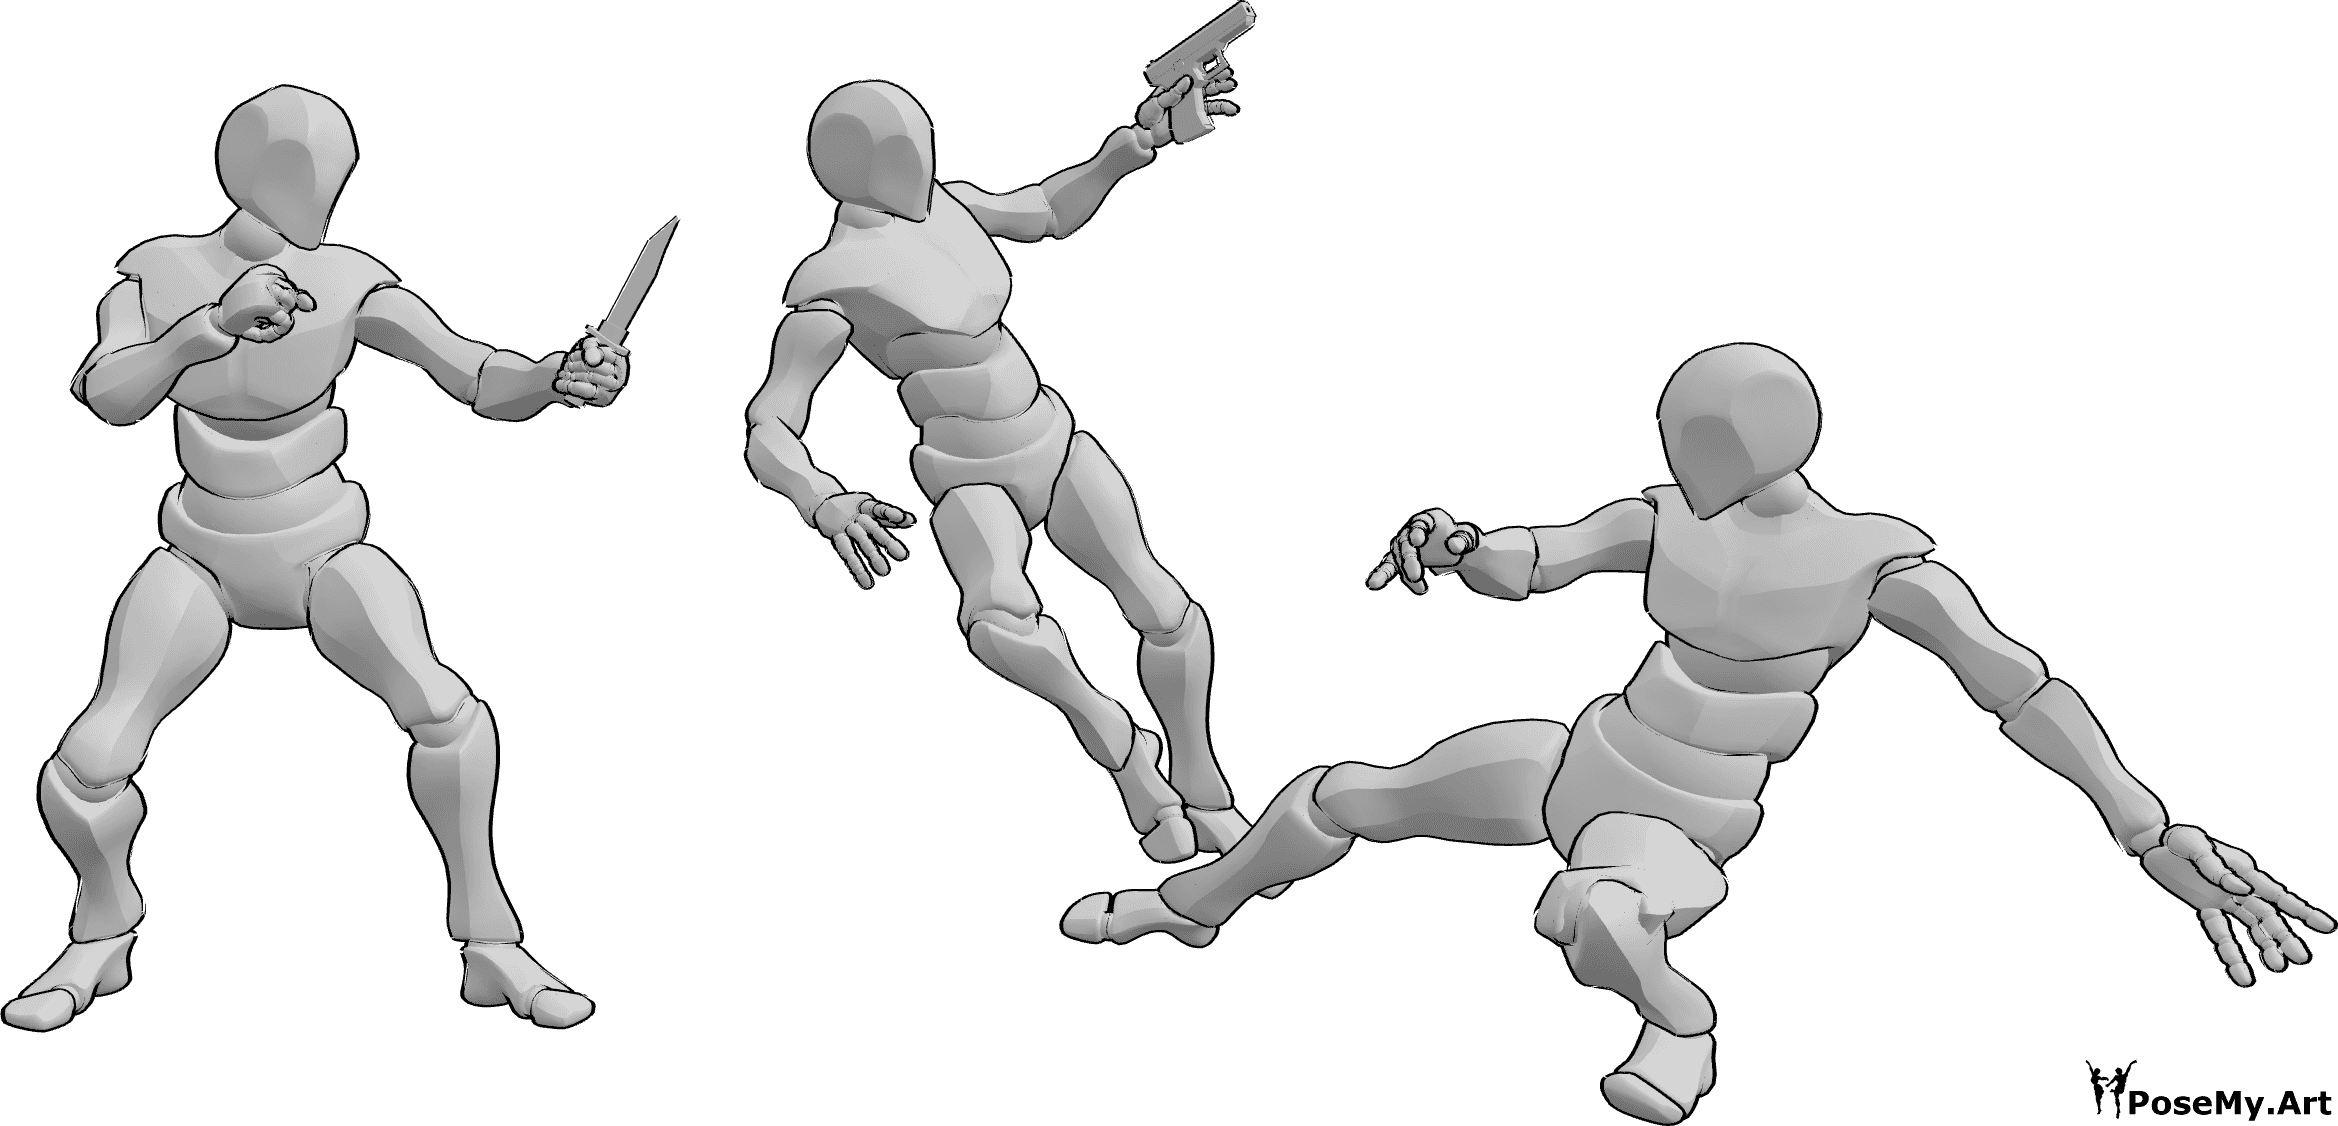 Referência de poses- Pose de combate com punhal e pistola - Três homens estão a lutar, segurando uma arma e um punhal, um deles cai devido a um pontapé